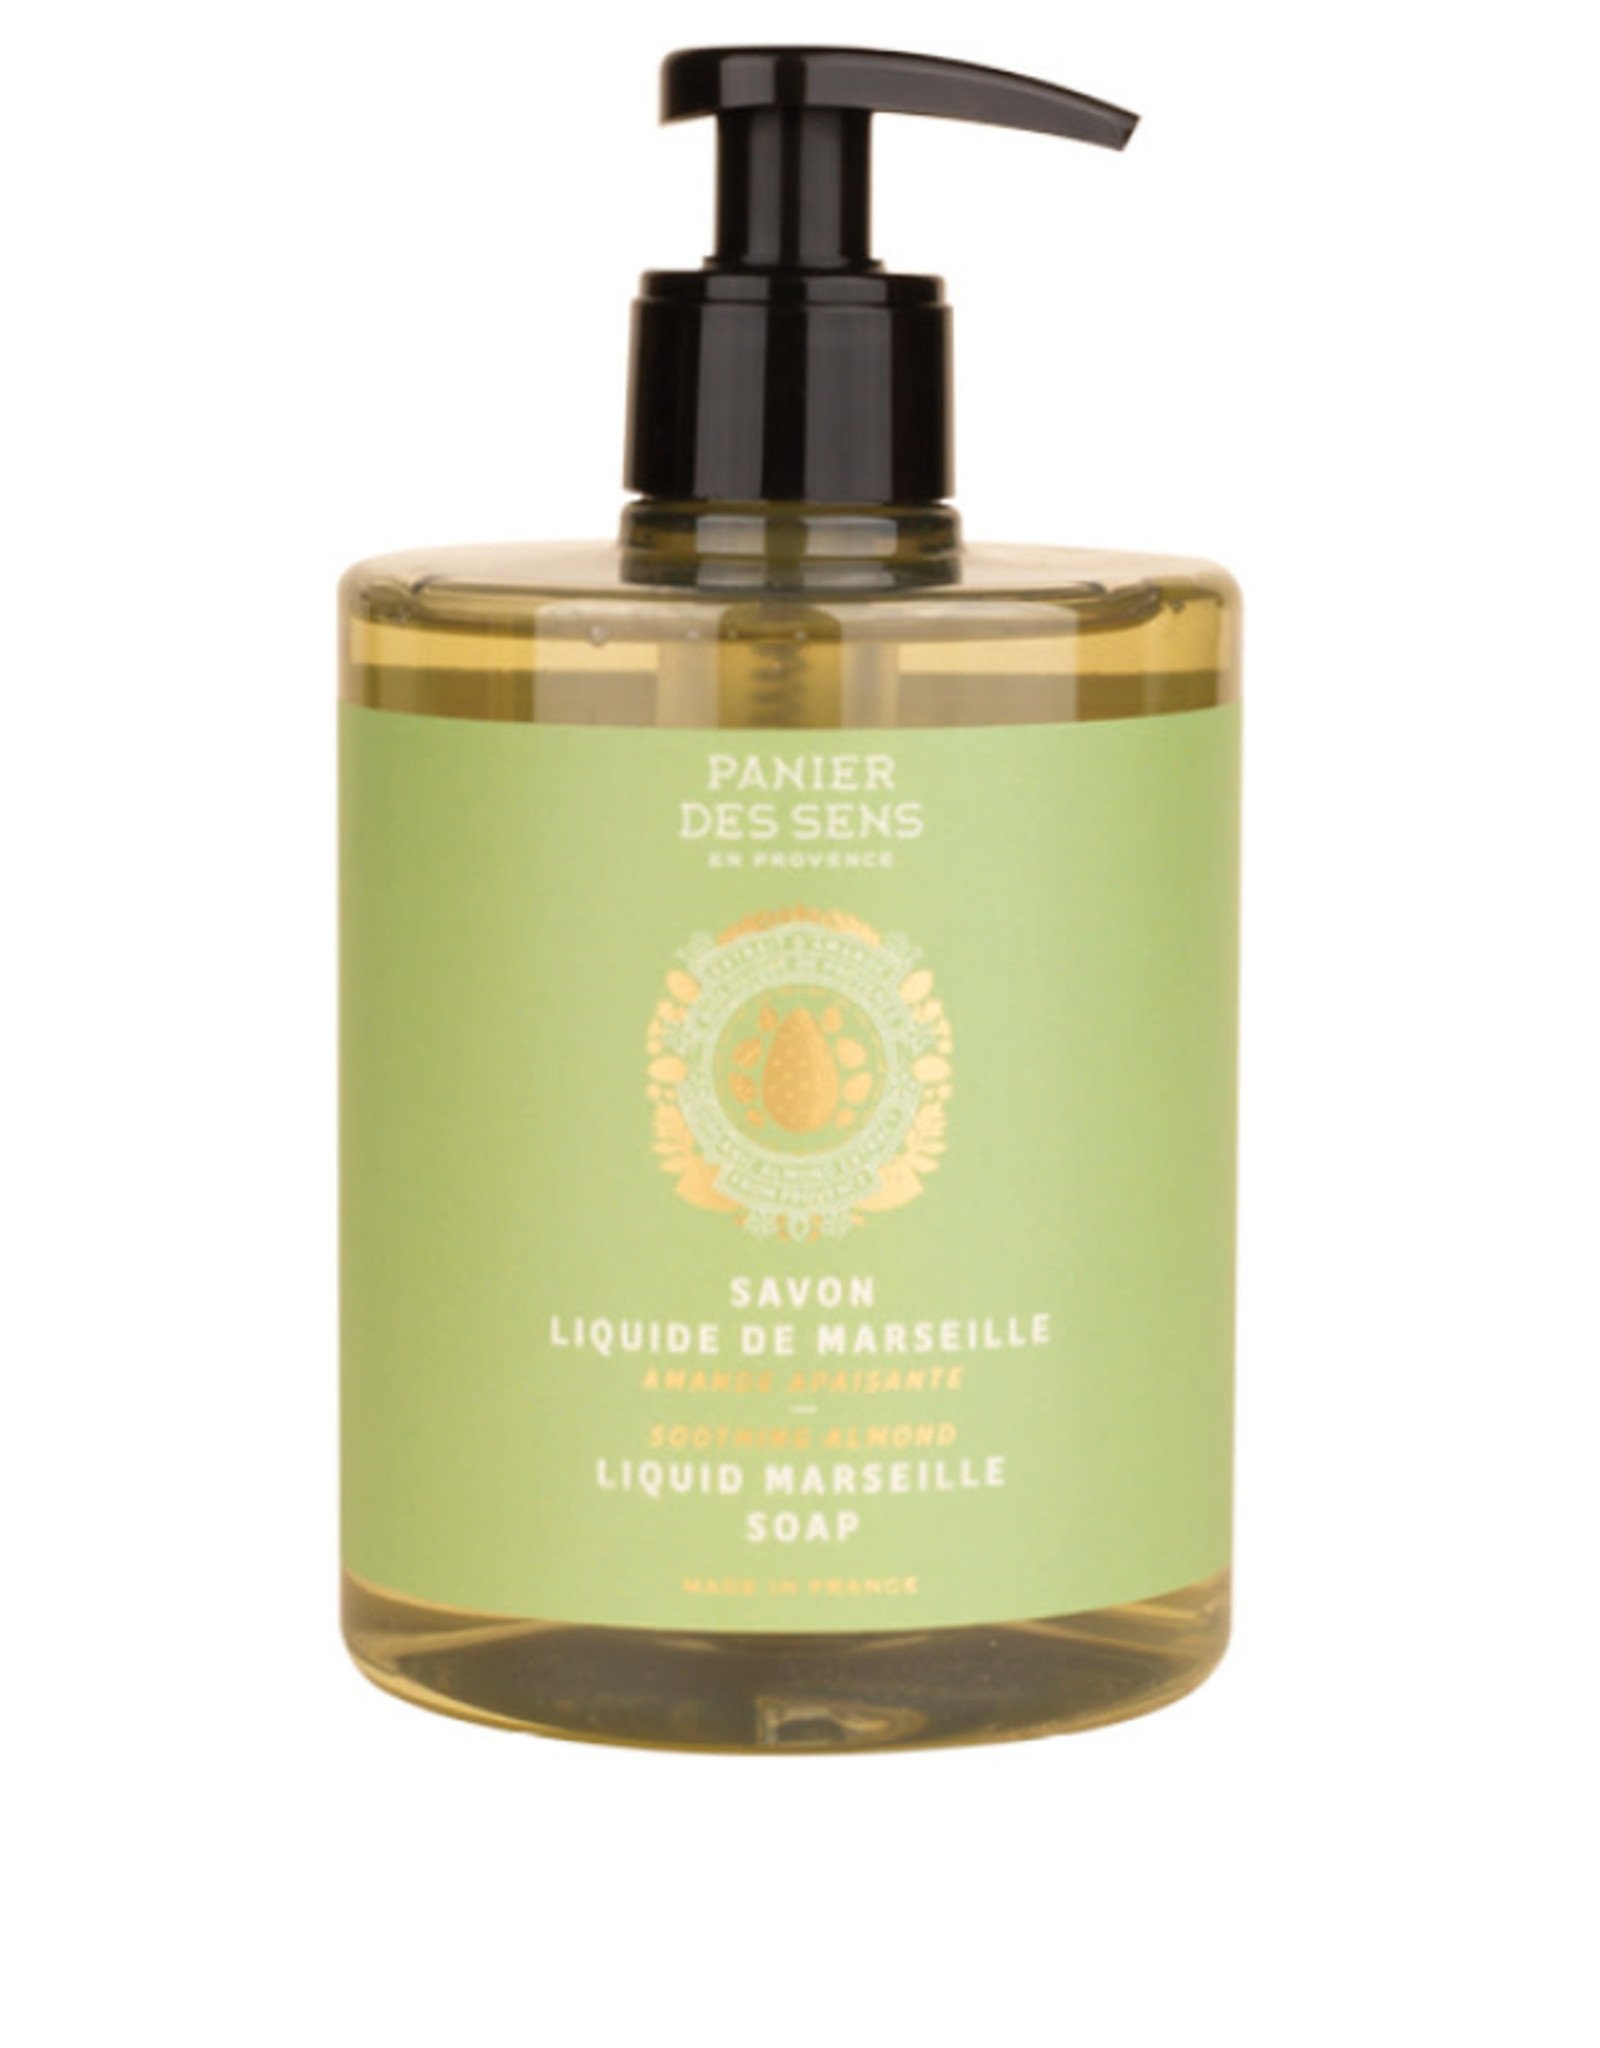 Panier Des Sens Liquid Marseille Soap "Soothing Almond" 16.9 oz. - Panier Des Sens